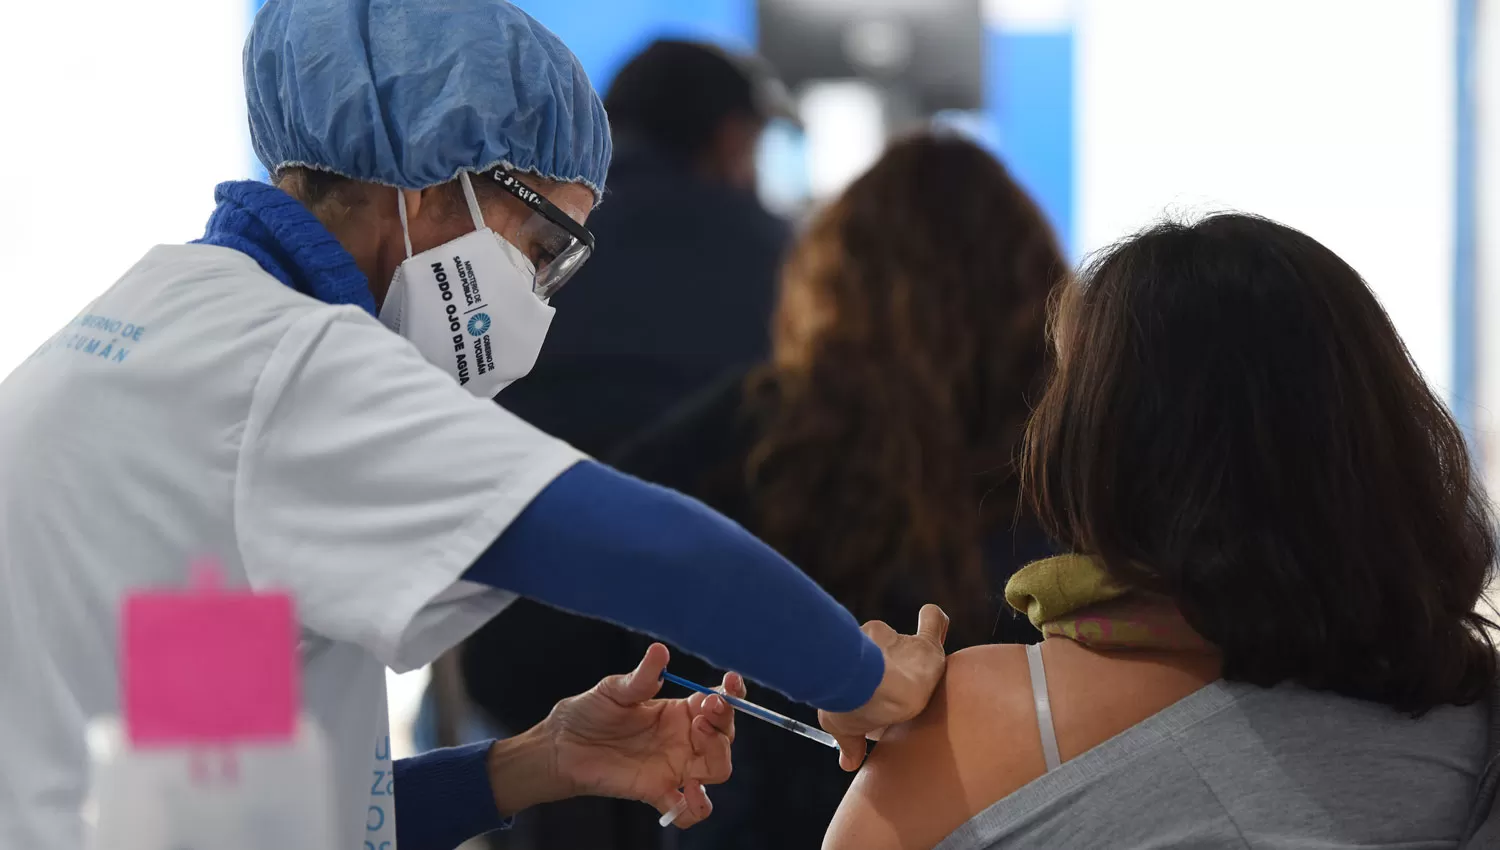 Vacunación para tucumanos de 39 años: comienza la cuenta regresiva para solicitar turnos